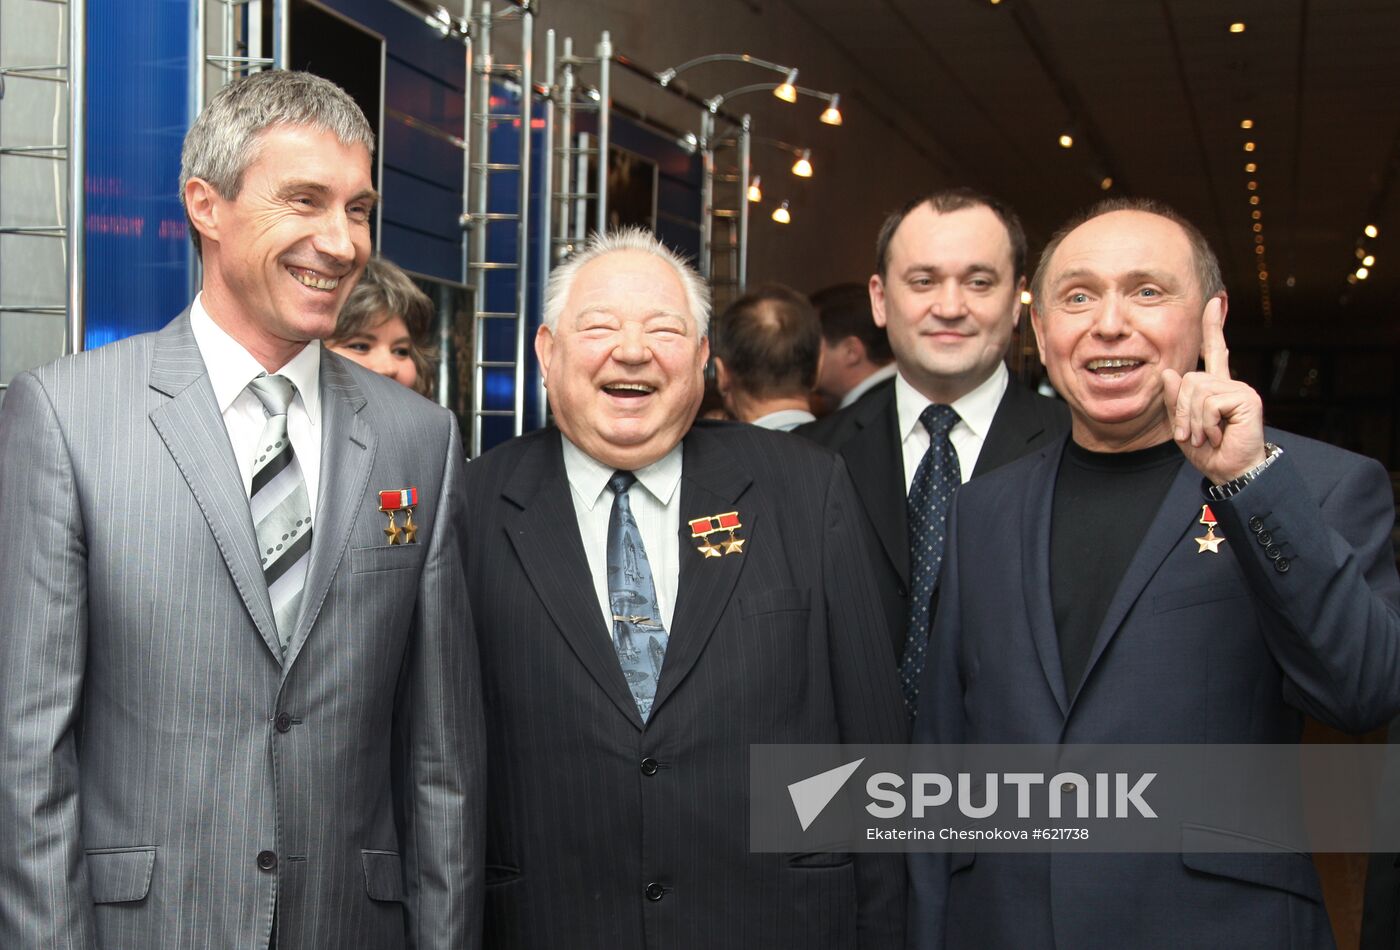 A. Volkov, G. Grechko, Yevgeny Shakhov and Sergei Krikalev